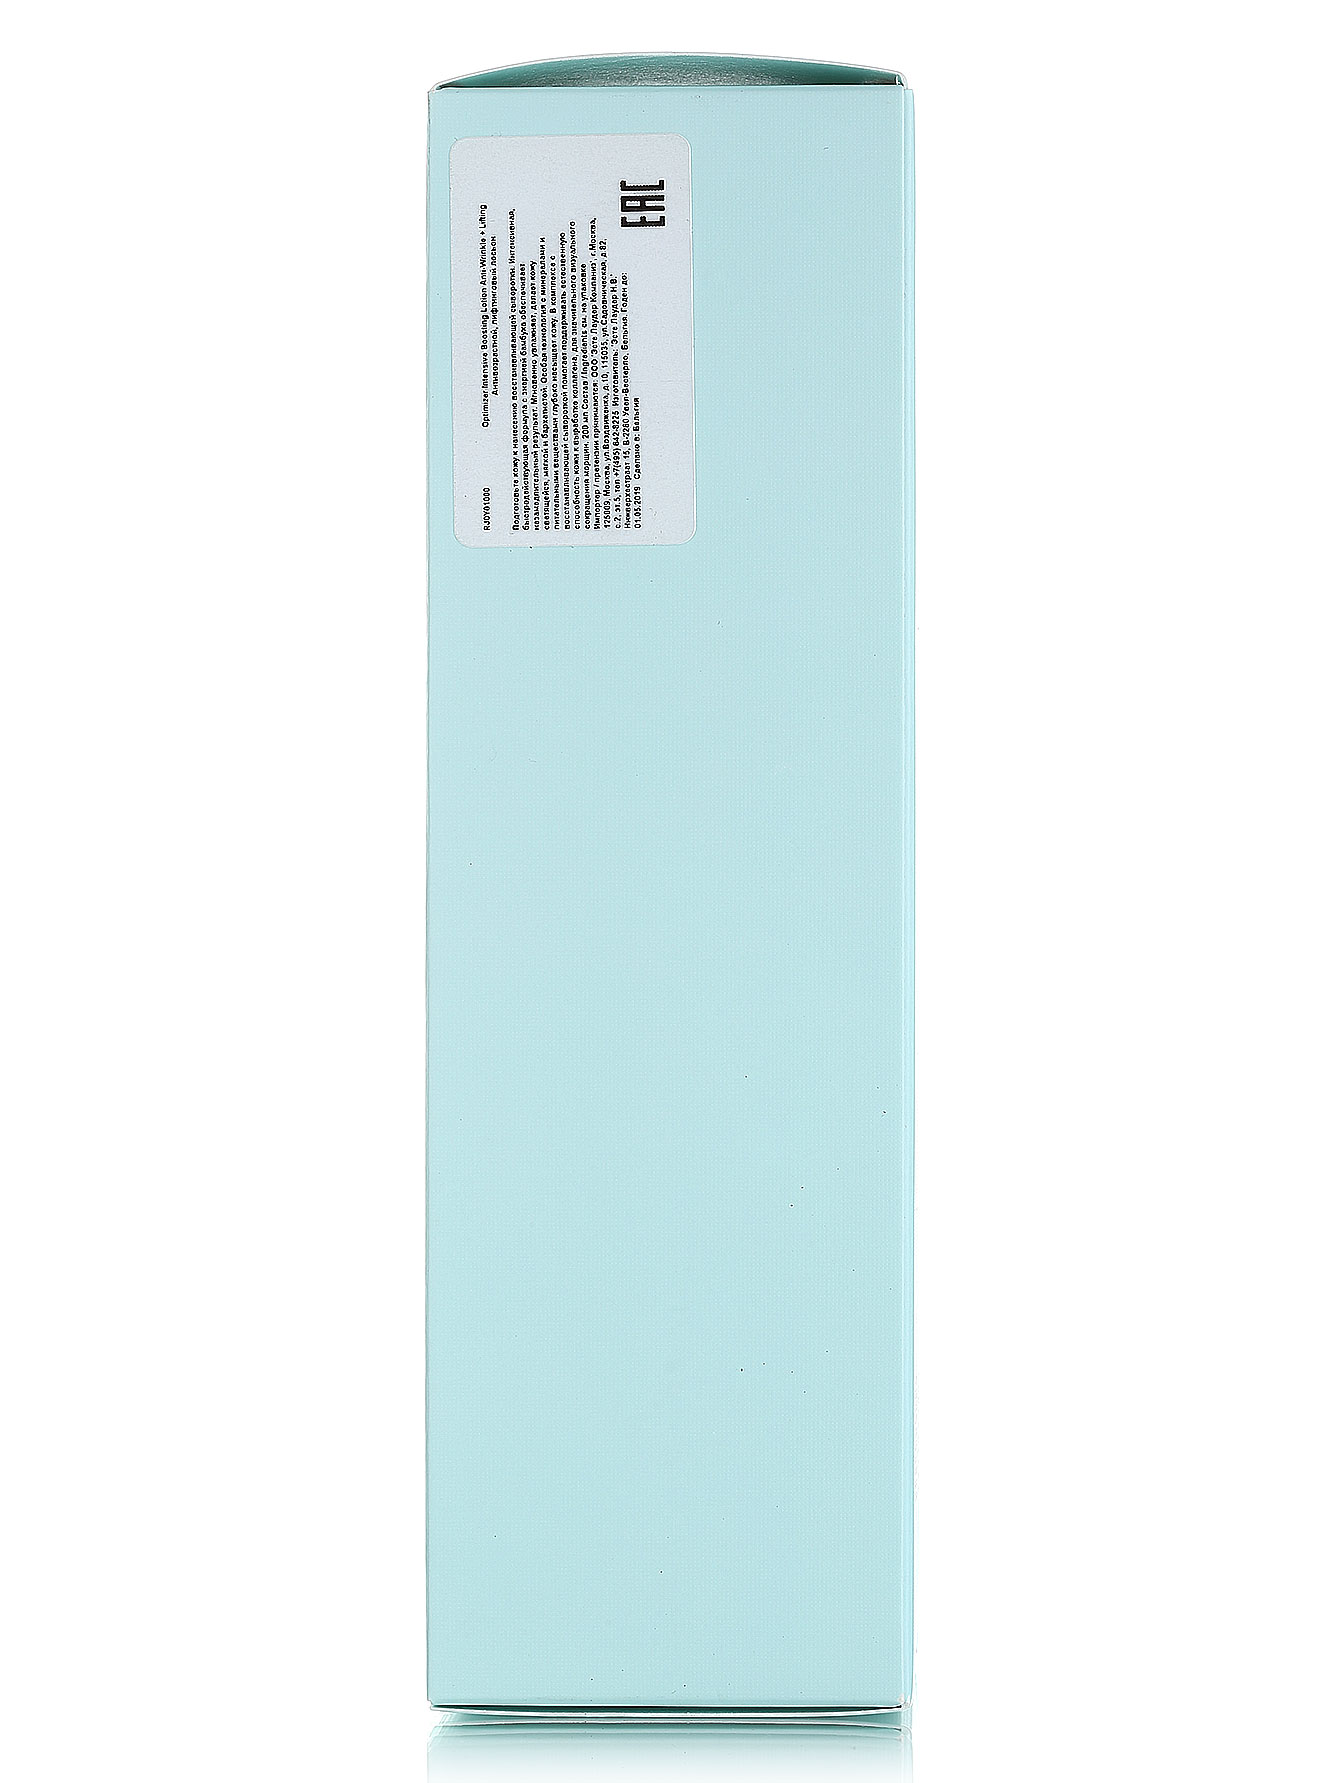  Антивозрастной лифтинговый лосьон - Genuine Glow, 200ml - Модель Верх-Низ